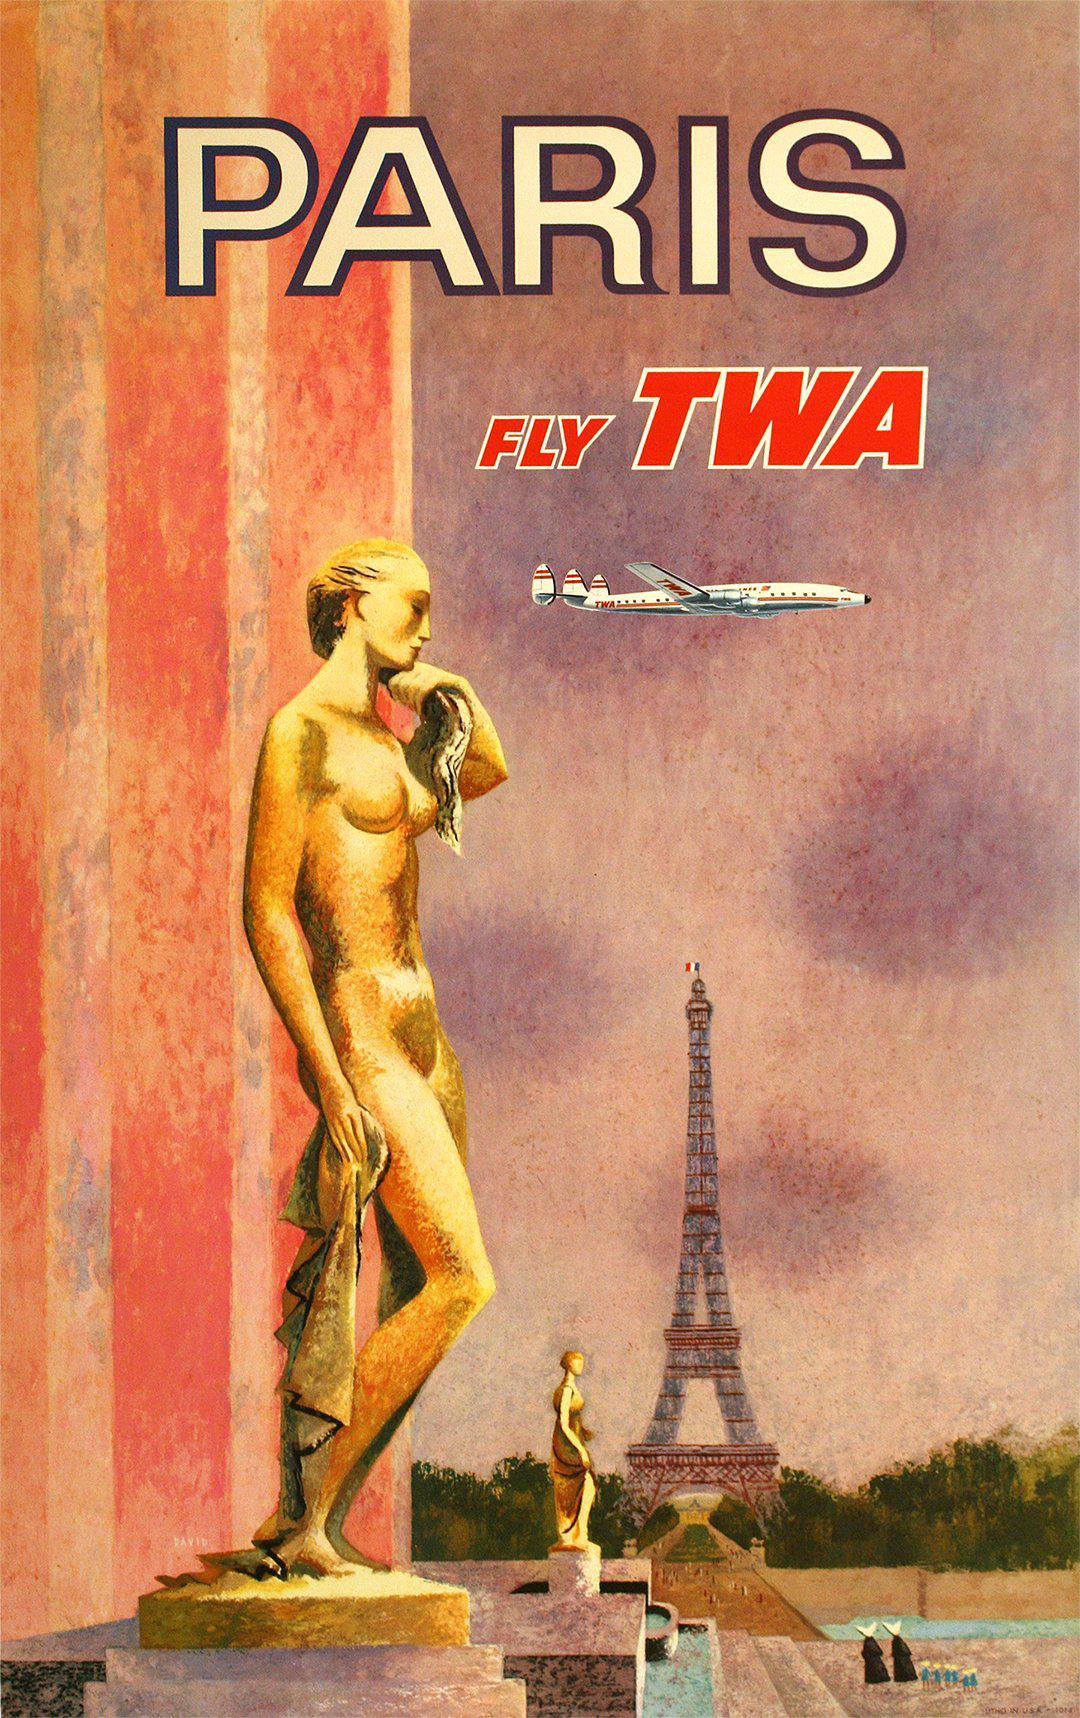 Fly TWA Paris - Gold Statue by David Klein c1960